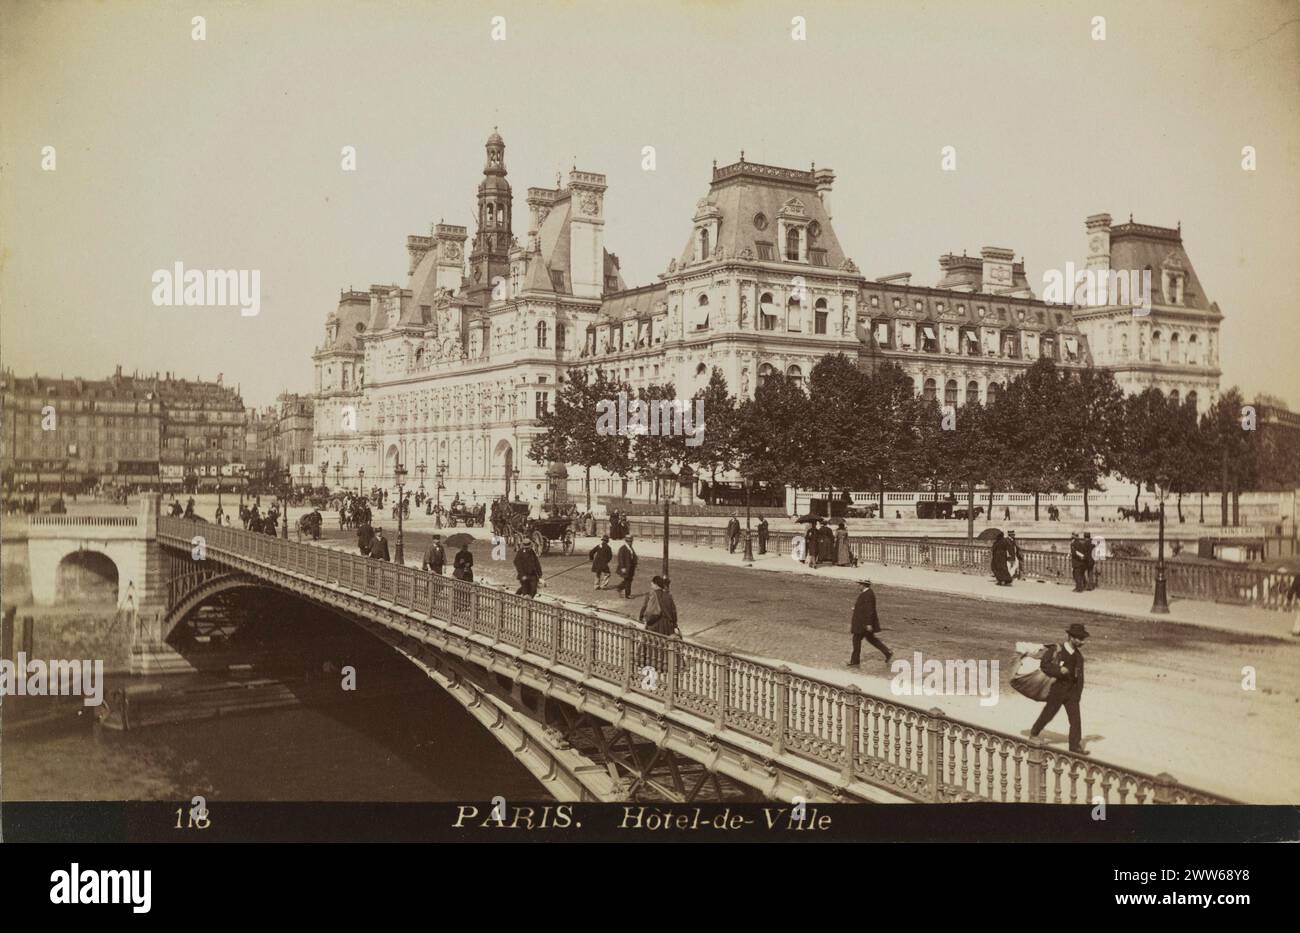 Photo vintage en noir et blanc de l'Hôtel de ville ou de l'Hôtel de ville et du Pont d'Arcole à Paris, France CA. 1885, impression albumen Banque D'Images